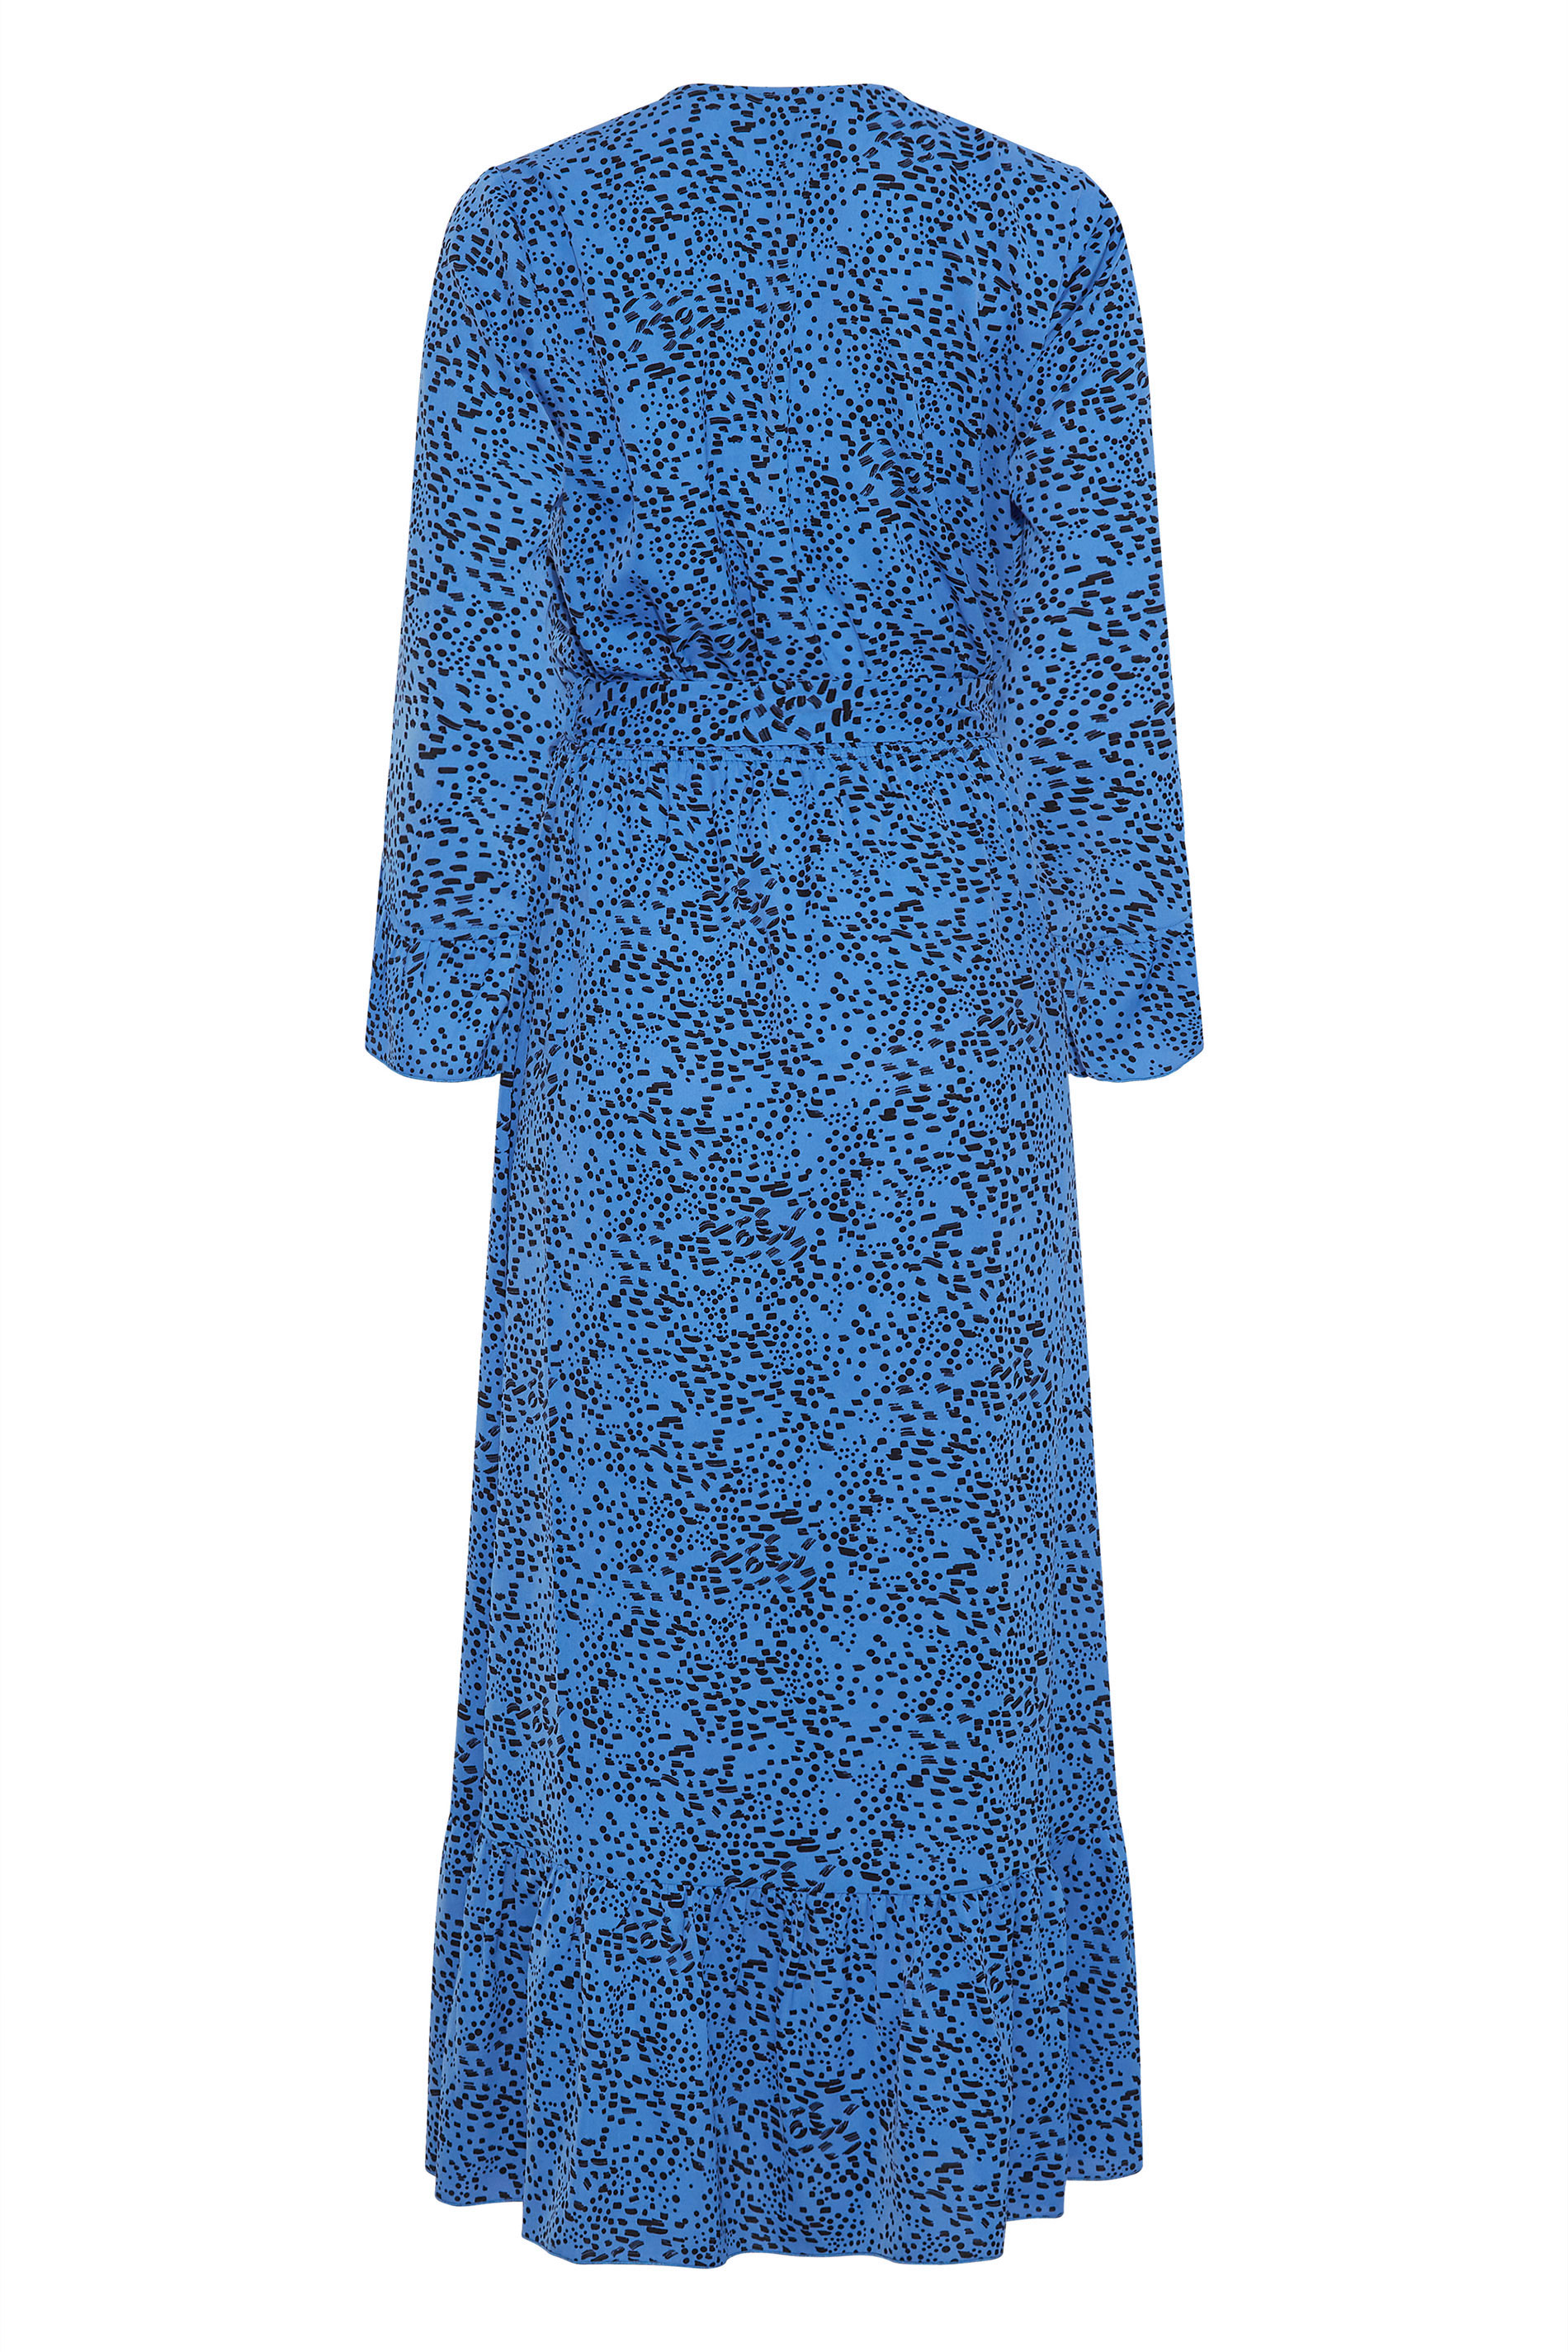 LTS Tall Women's Cobalt Blue Dalmatian Print Wrap Dress | Long Tall Sally